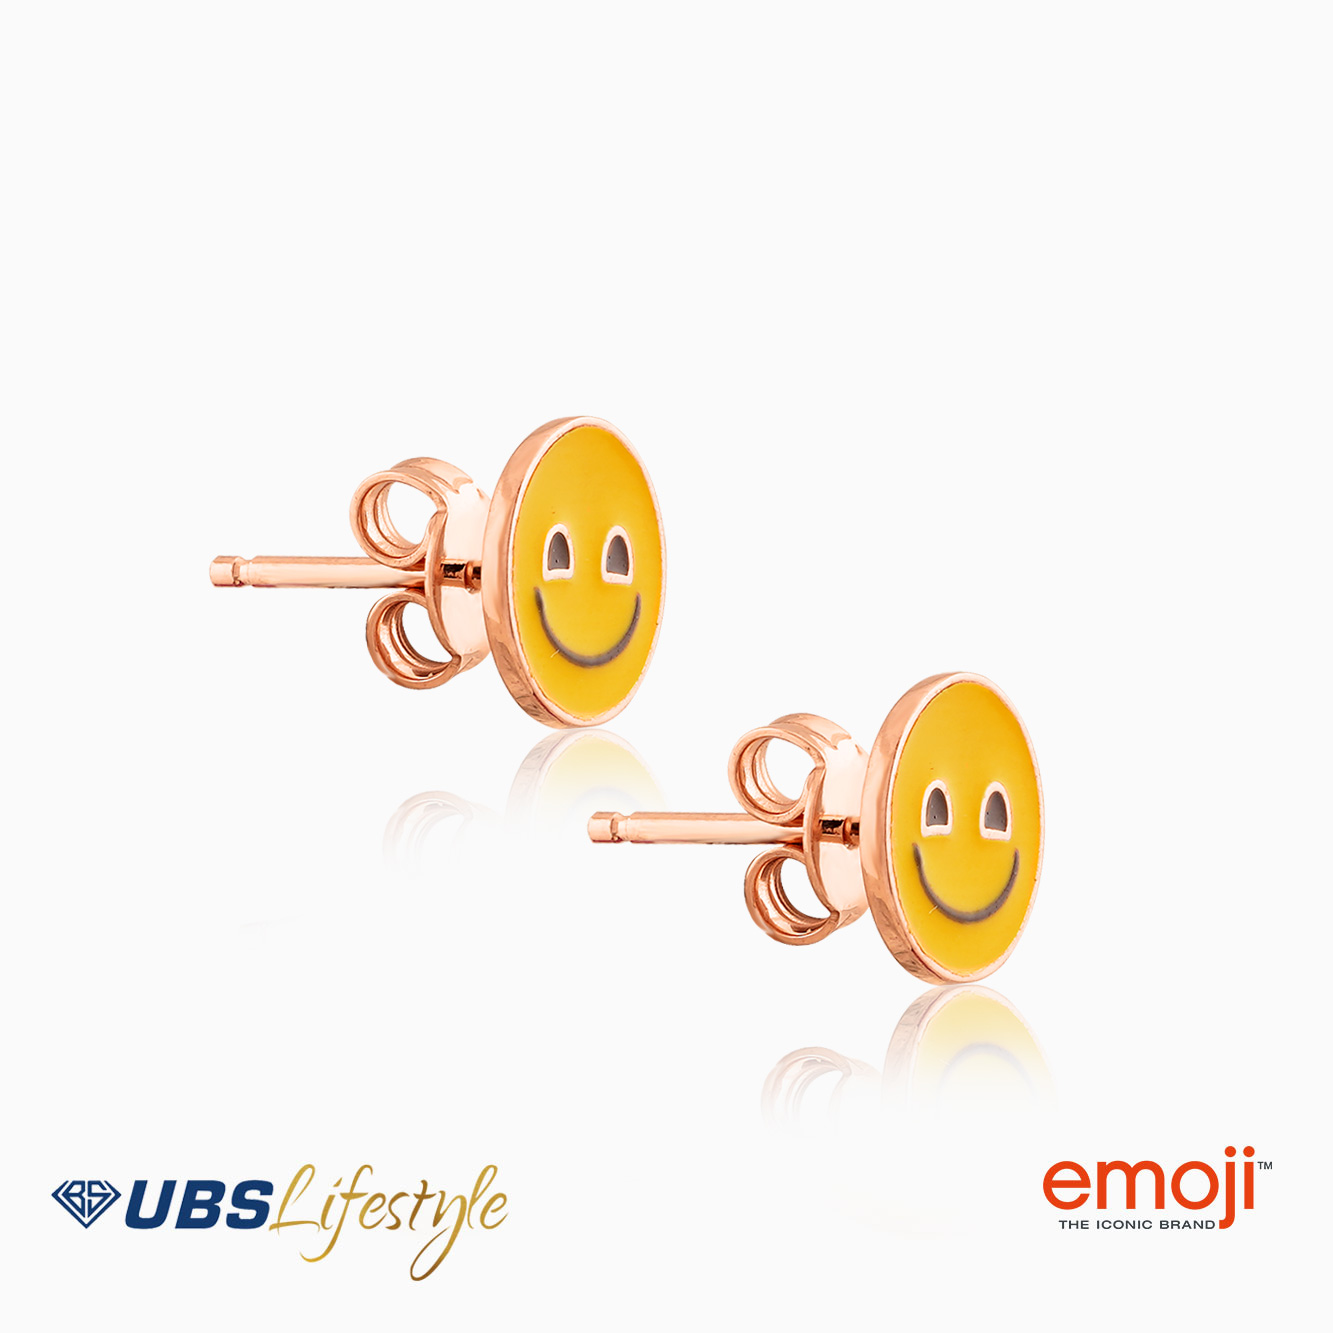 UBS Anting Emas Emoji - Awq0001 - 17K